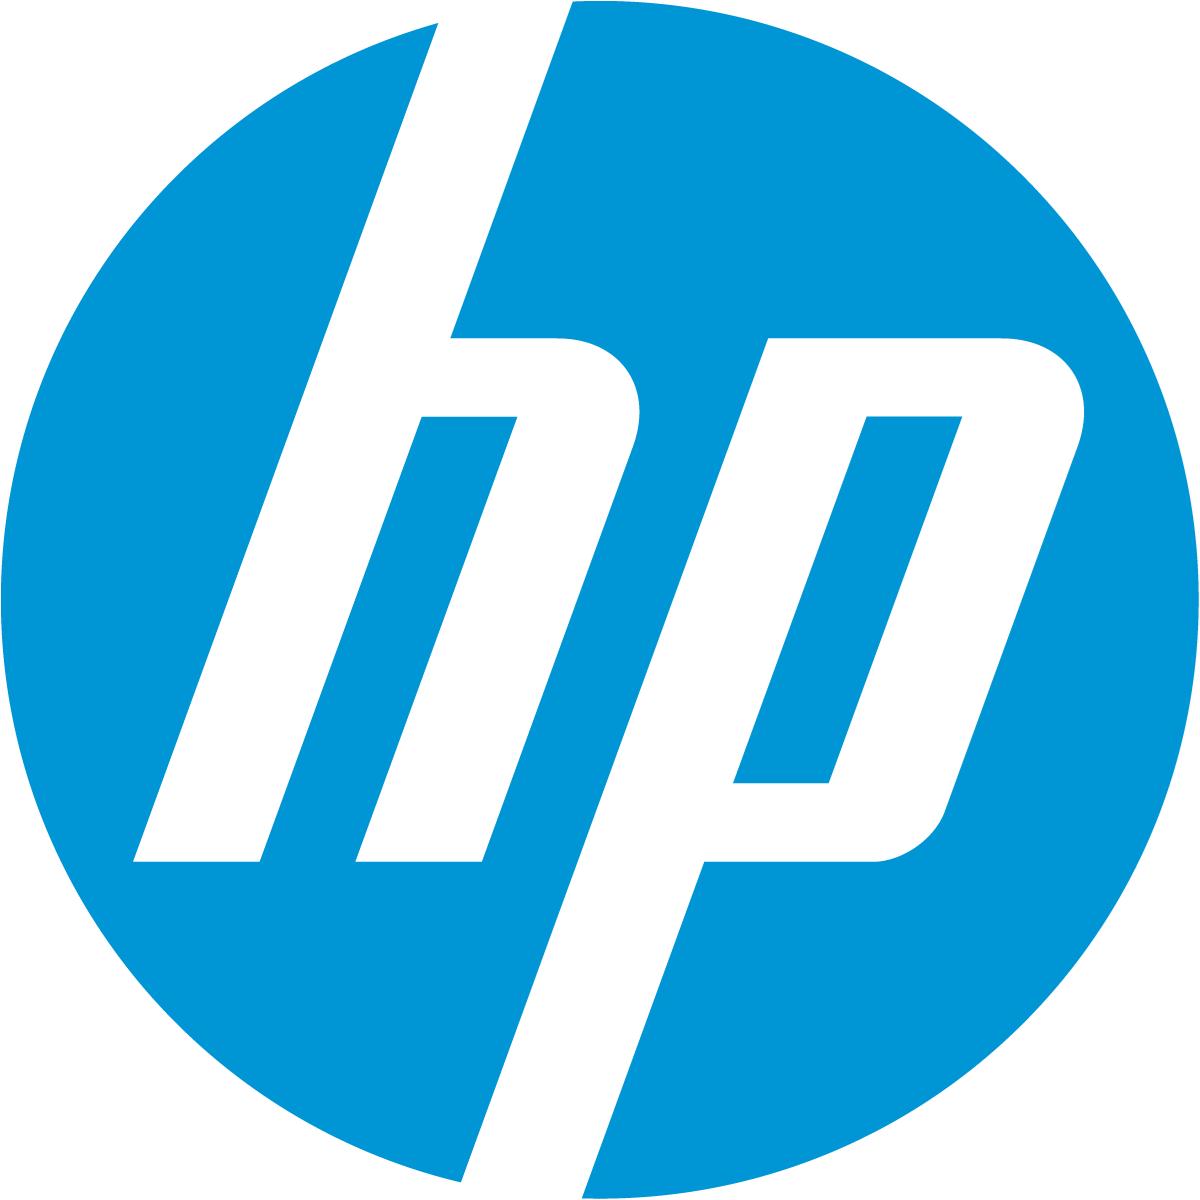 Logo of HP